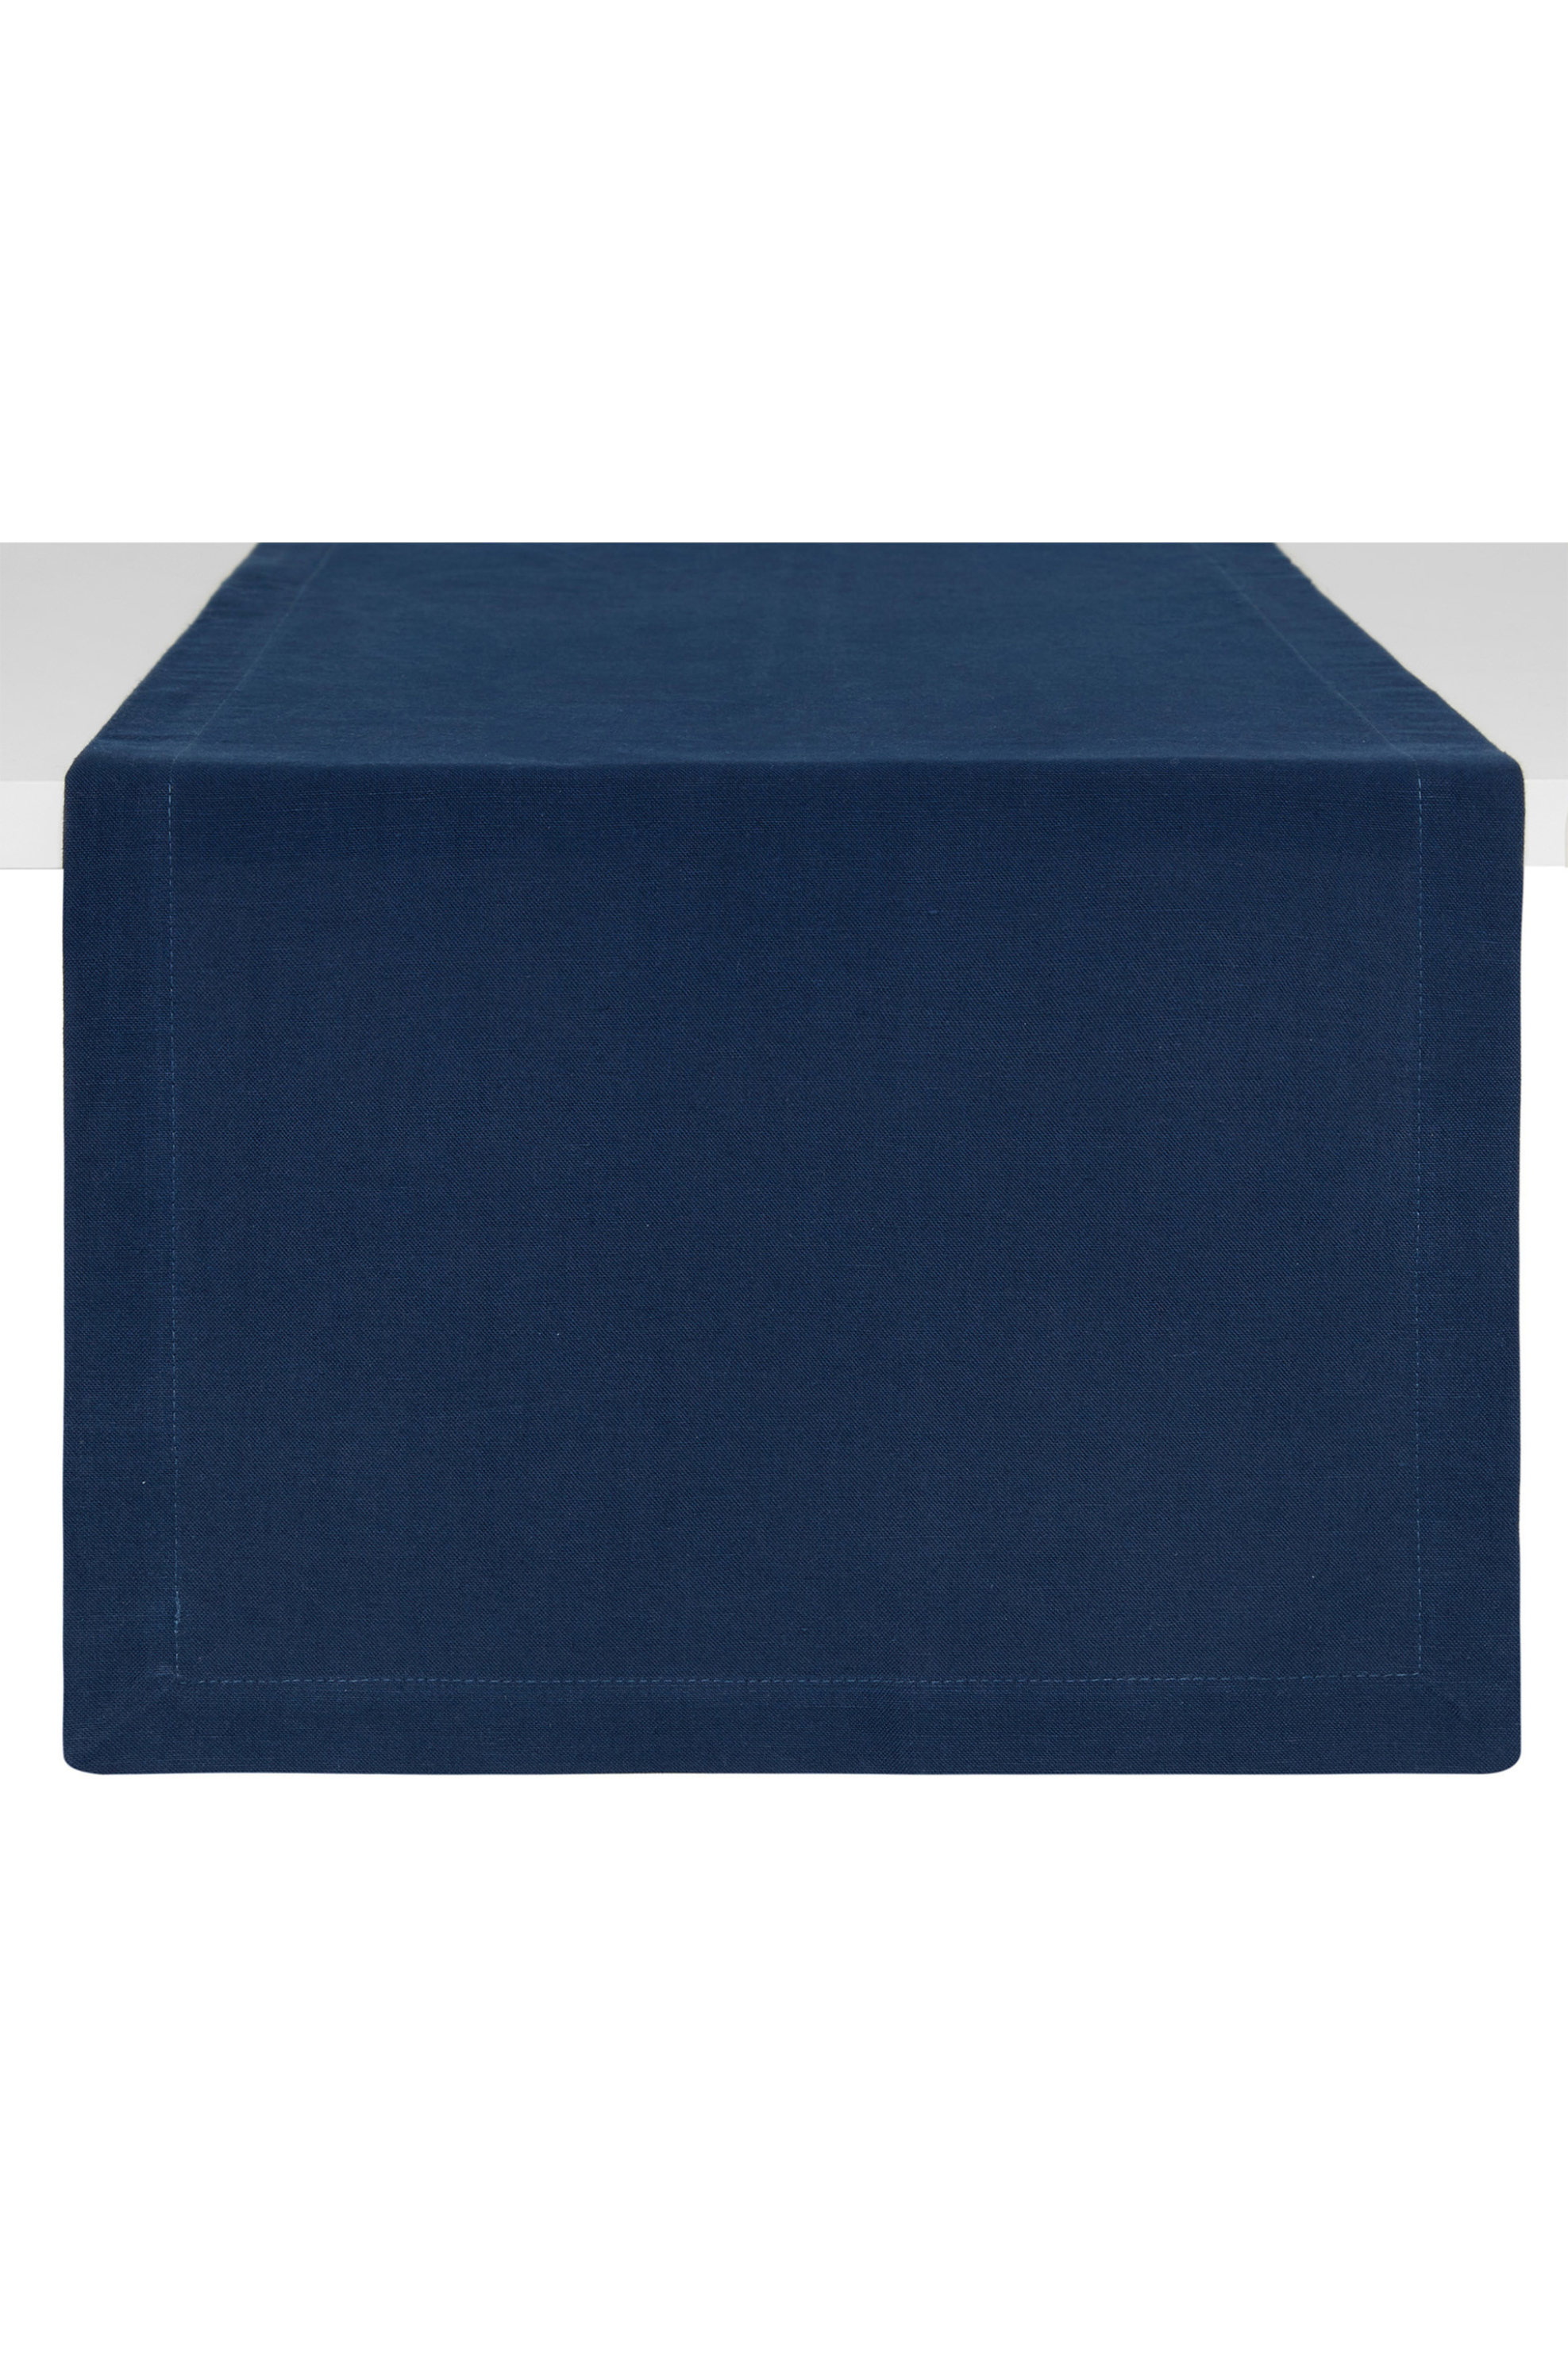 Coincasa ράνερ λινό μονόχρωμο 140 x 40 cm - 007152396 Μπλε Σκούρο 2-7054006359|EE0248|